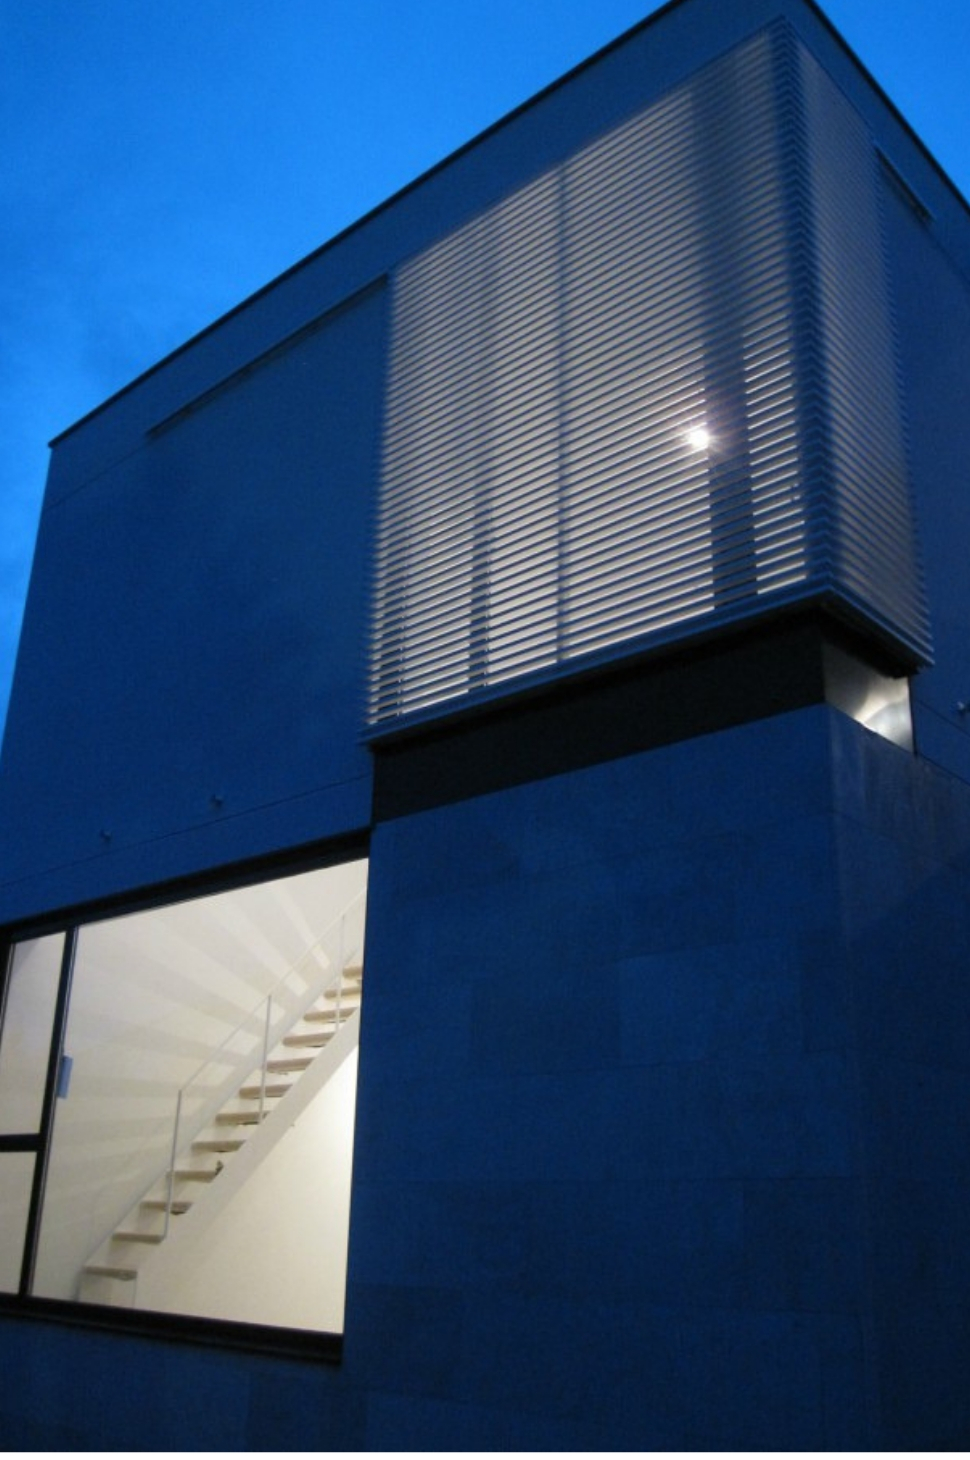 Vivienda Unifamiliar en Monteclaro, Pozuelo de Alarcón, Madrid. Un proyecto del estudio de arquitectura FH2L Arquitectos.